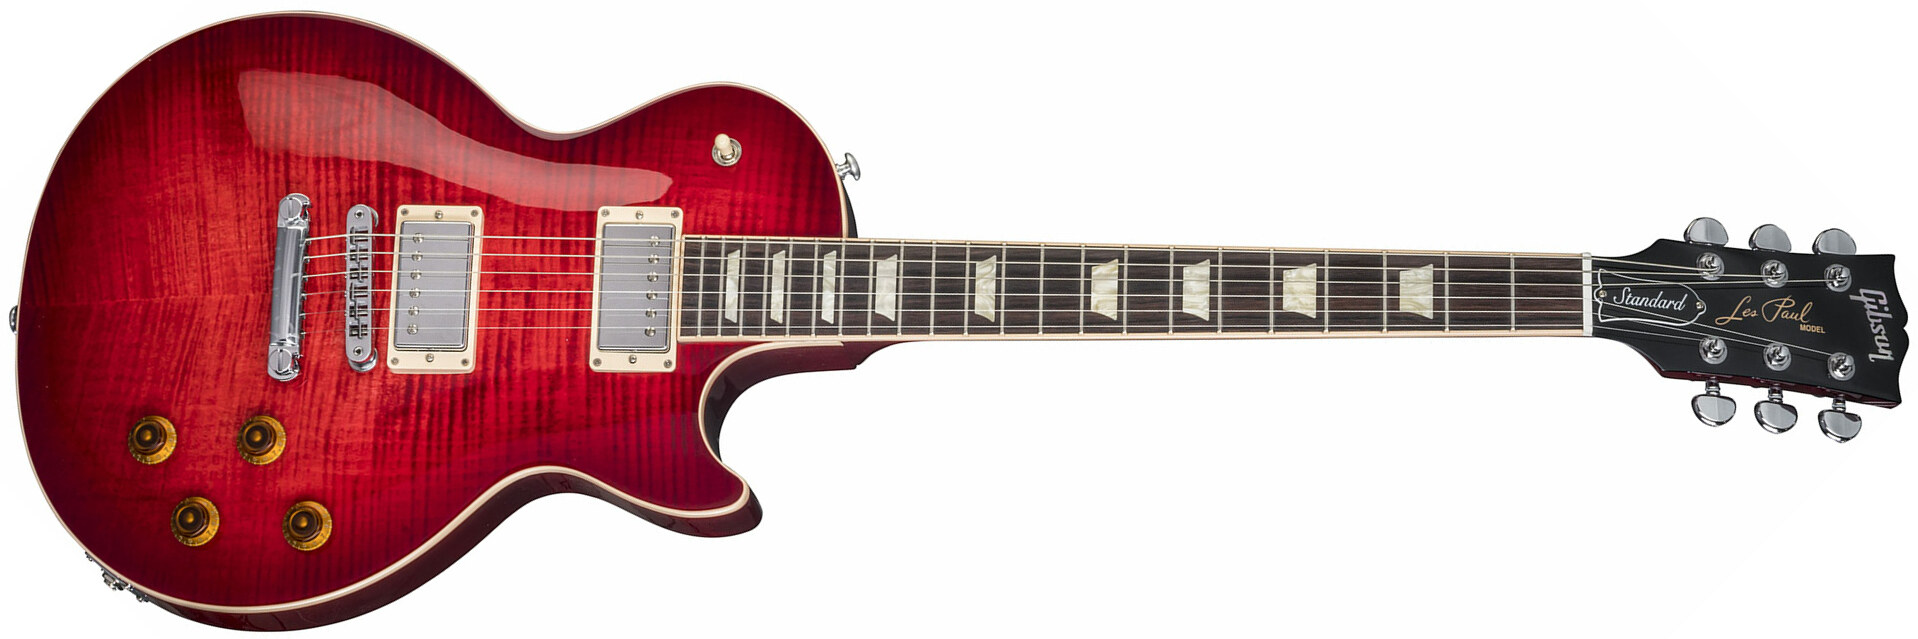 Gibson Les Paul Standard 2018 - Blood Orange Burst - Enkel gesneden elektrische gitaar - Main picture